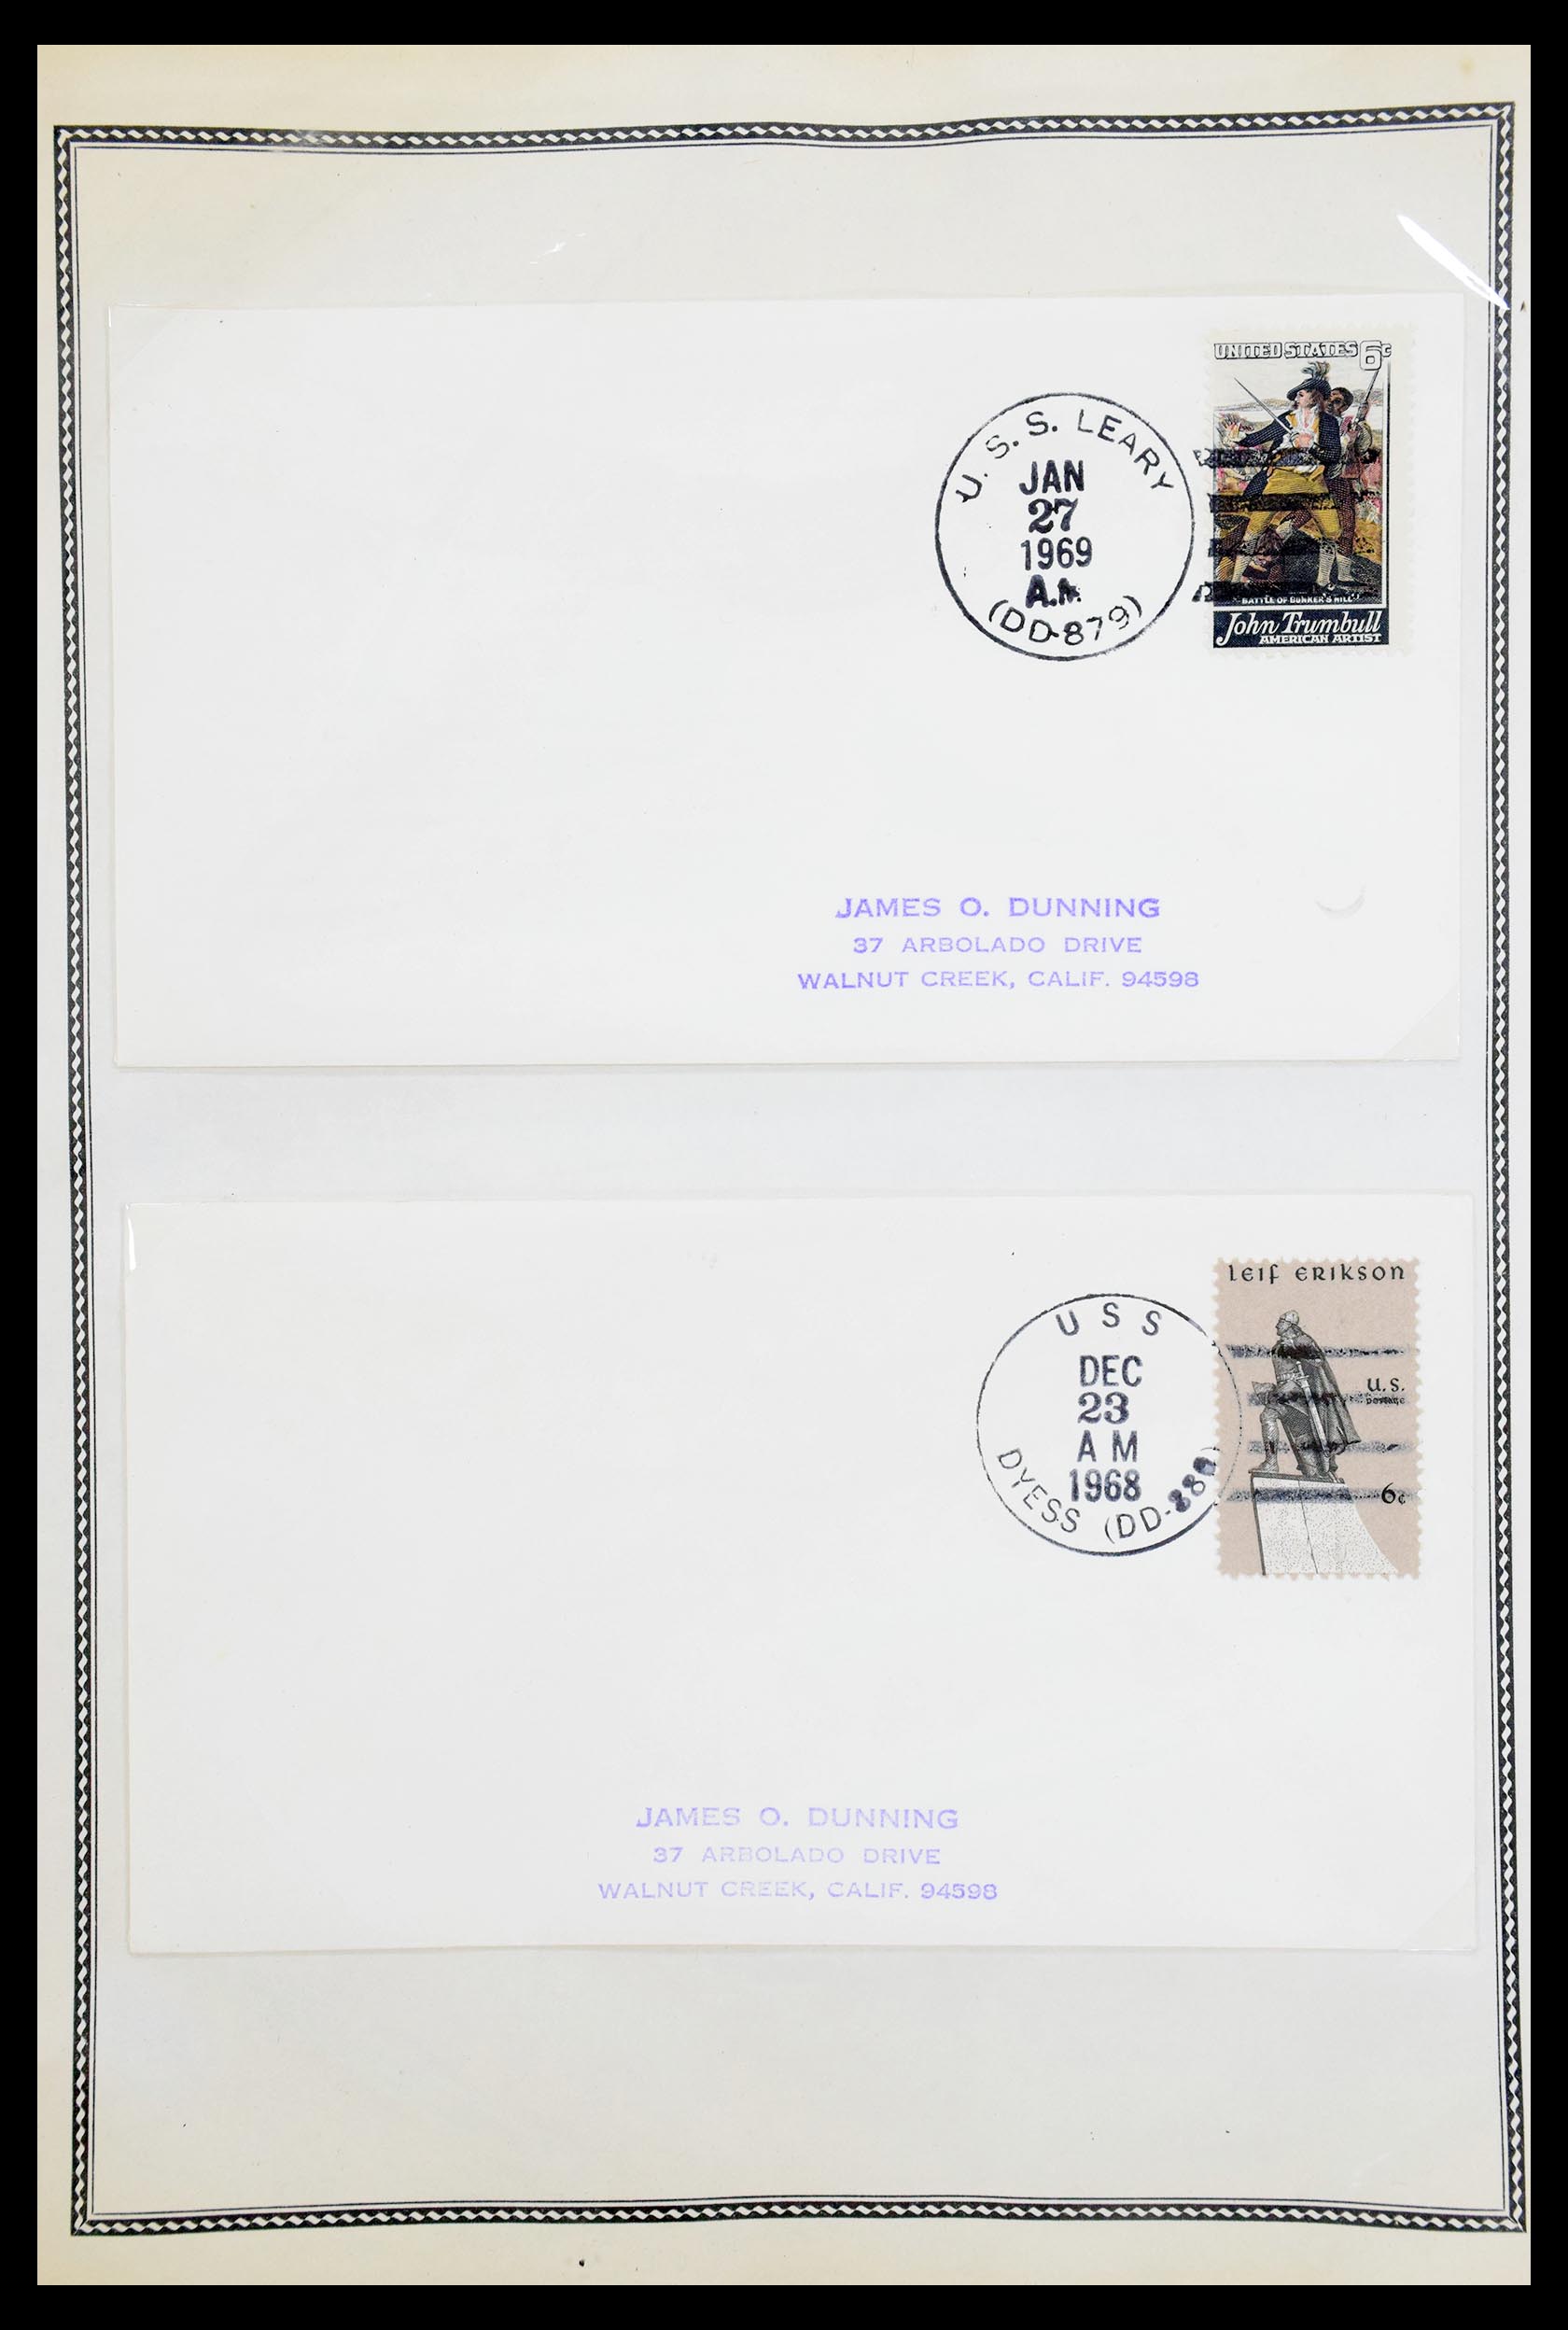 30341 061 - 30341 USA scheepspost brieven 1930-1970.